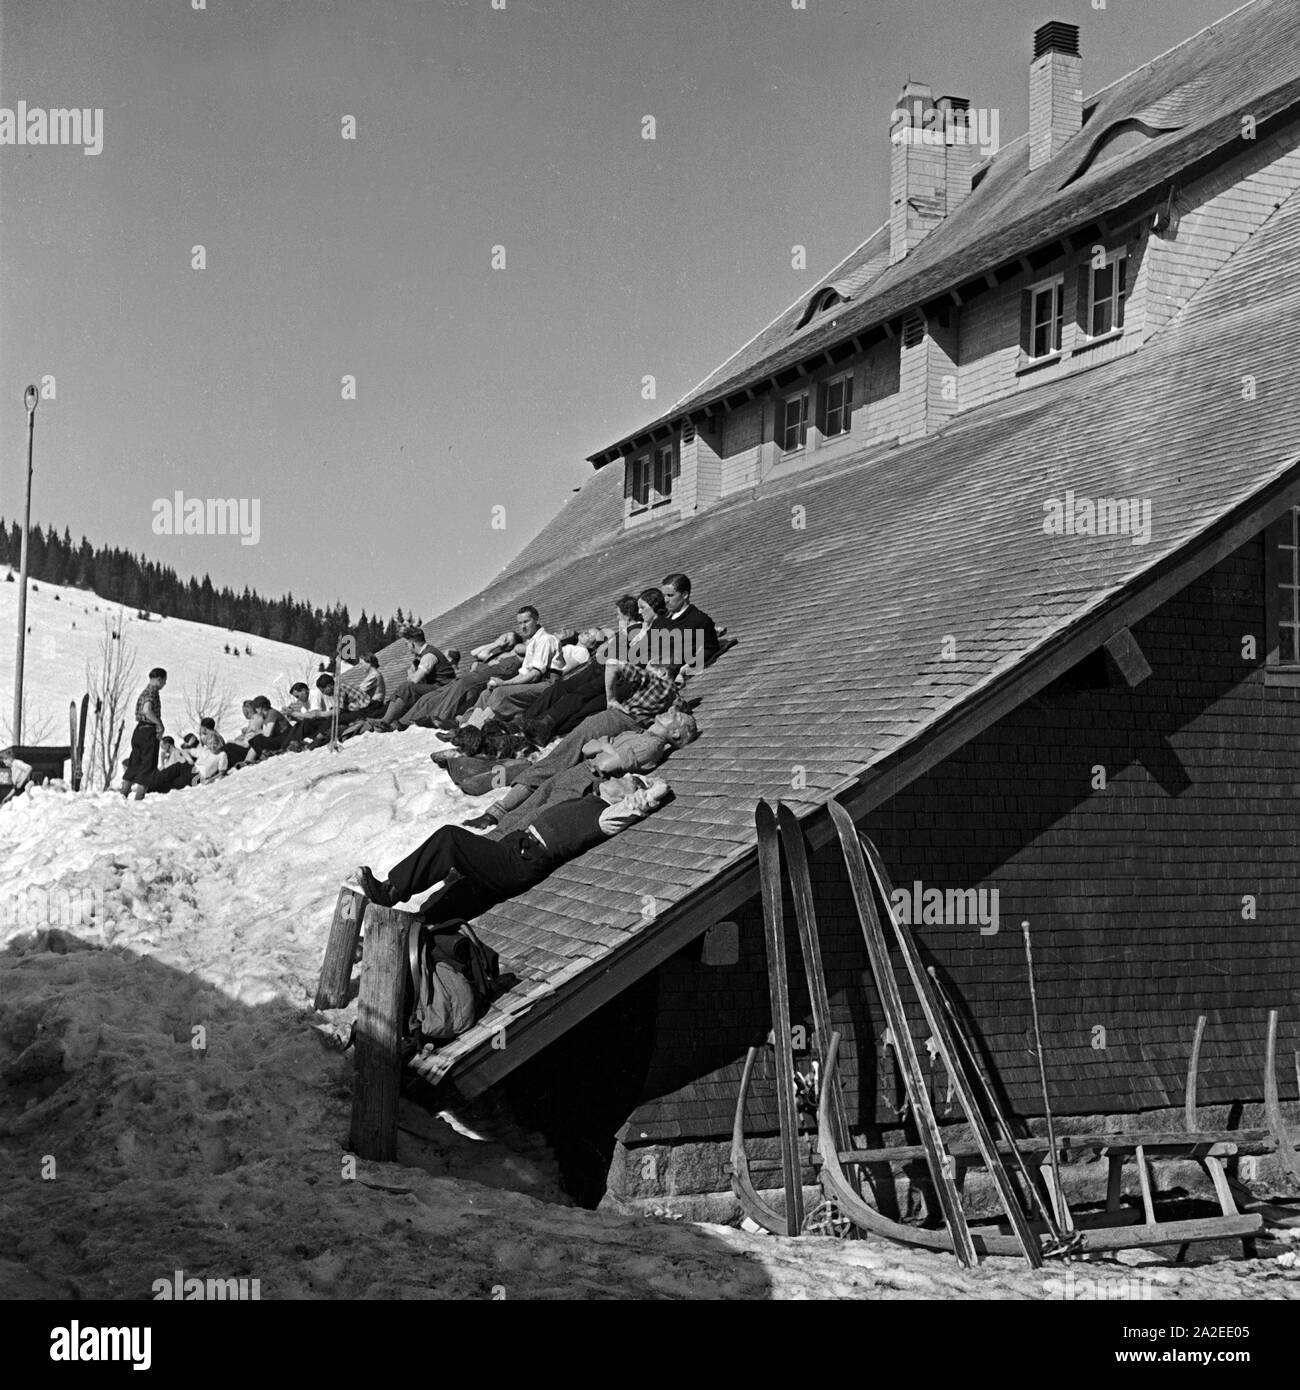 Winterurlauber beim Sonnenbad auf dem Dach einer Skihütte, Deutschland 1930er Jahre. Ski tourists sunbathing at the roof of a ski hut, Germany 1930s. Stock Photo